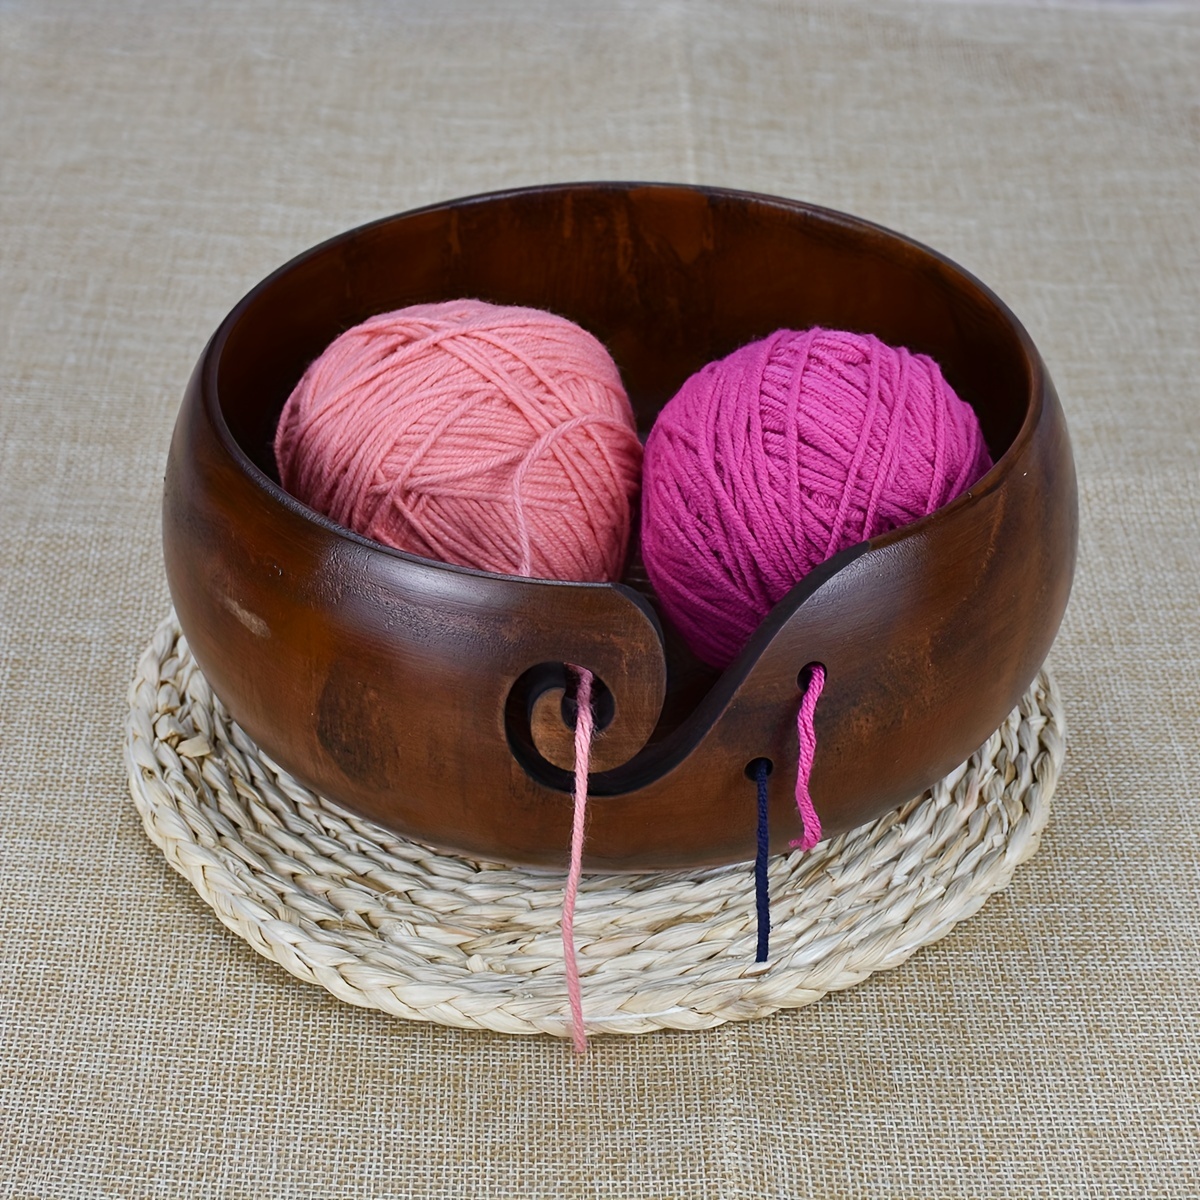  Wood Yarn Bowl with Lid, Crochet Bowls for Yarn